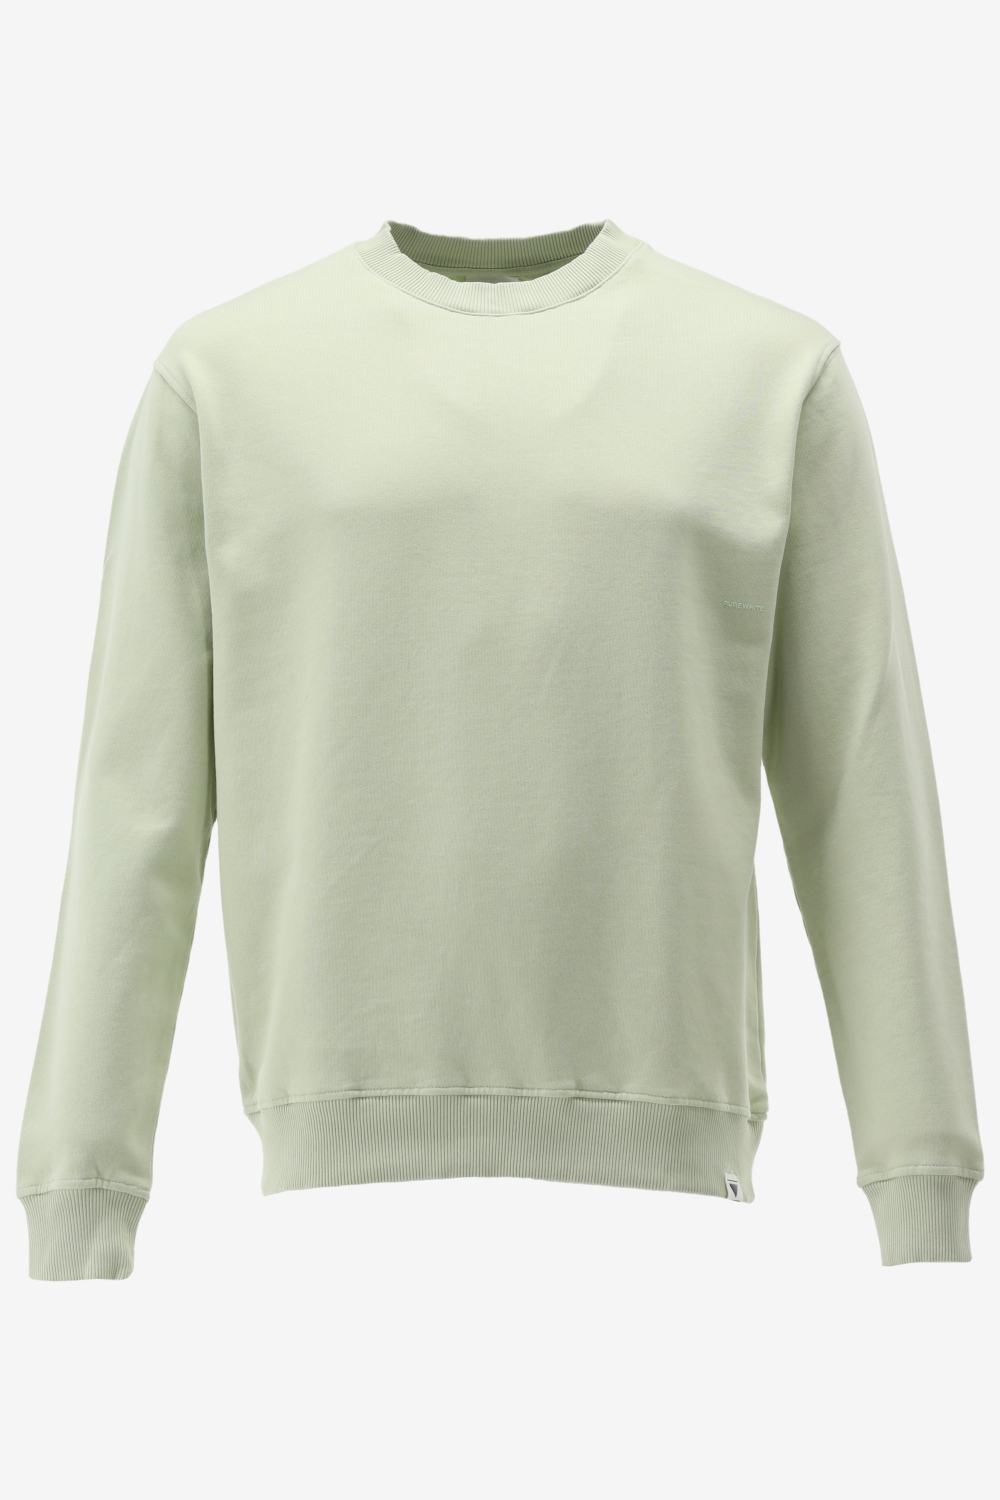 Purewhite -  Heren Regular Fit   Sweater  - Groen - Maat XS